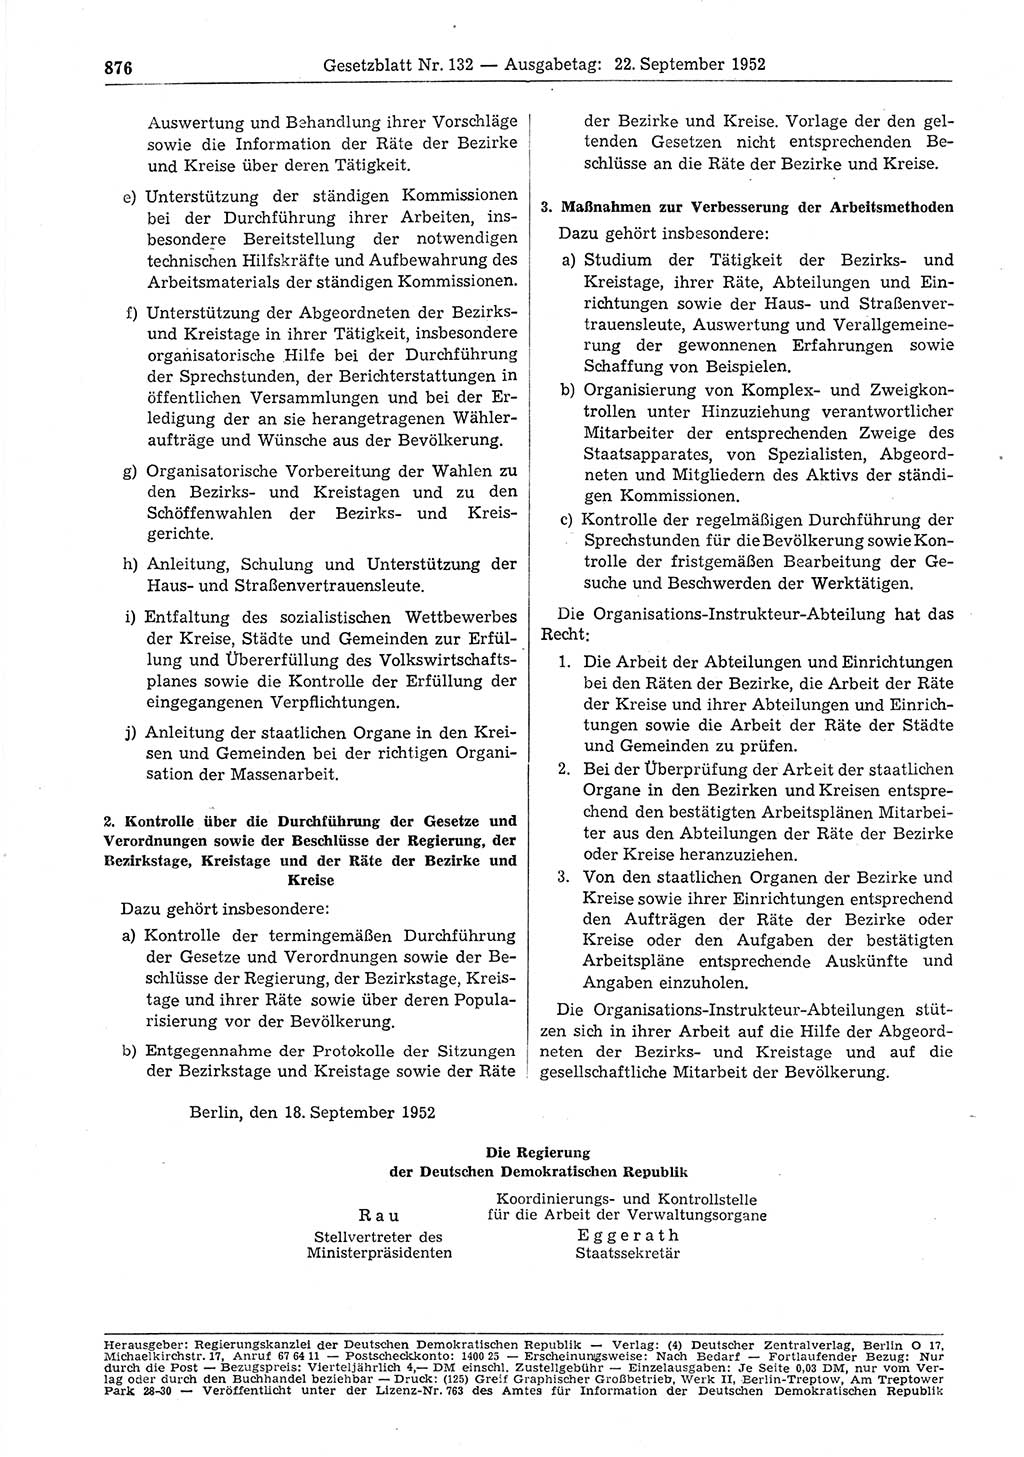 Gesetzblatt (GBl.) der Deutschen Demokratischen Republik (DDR) 1952, Seite 876 (GBl. DDR 1952, S. 876)